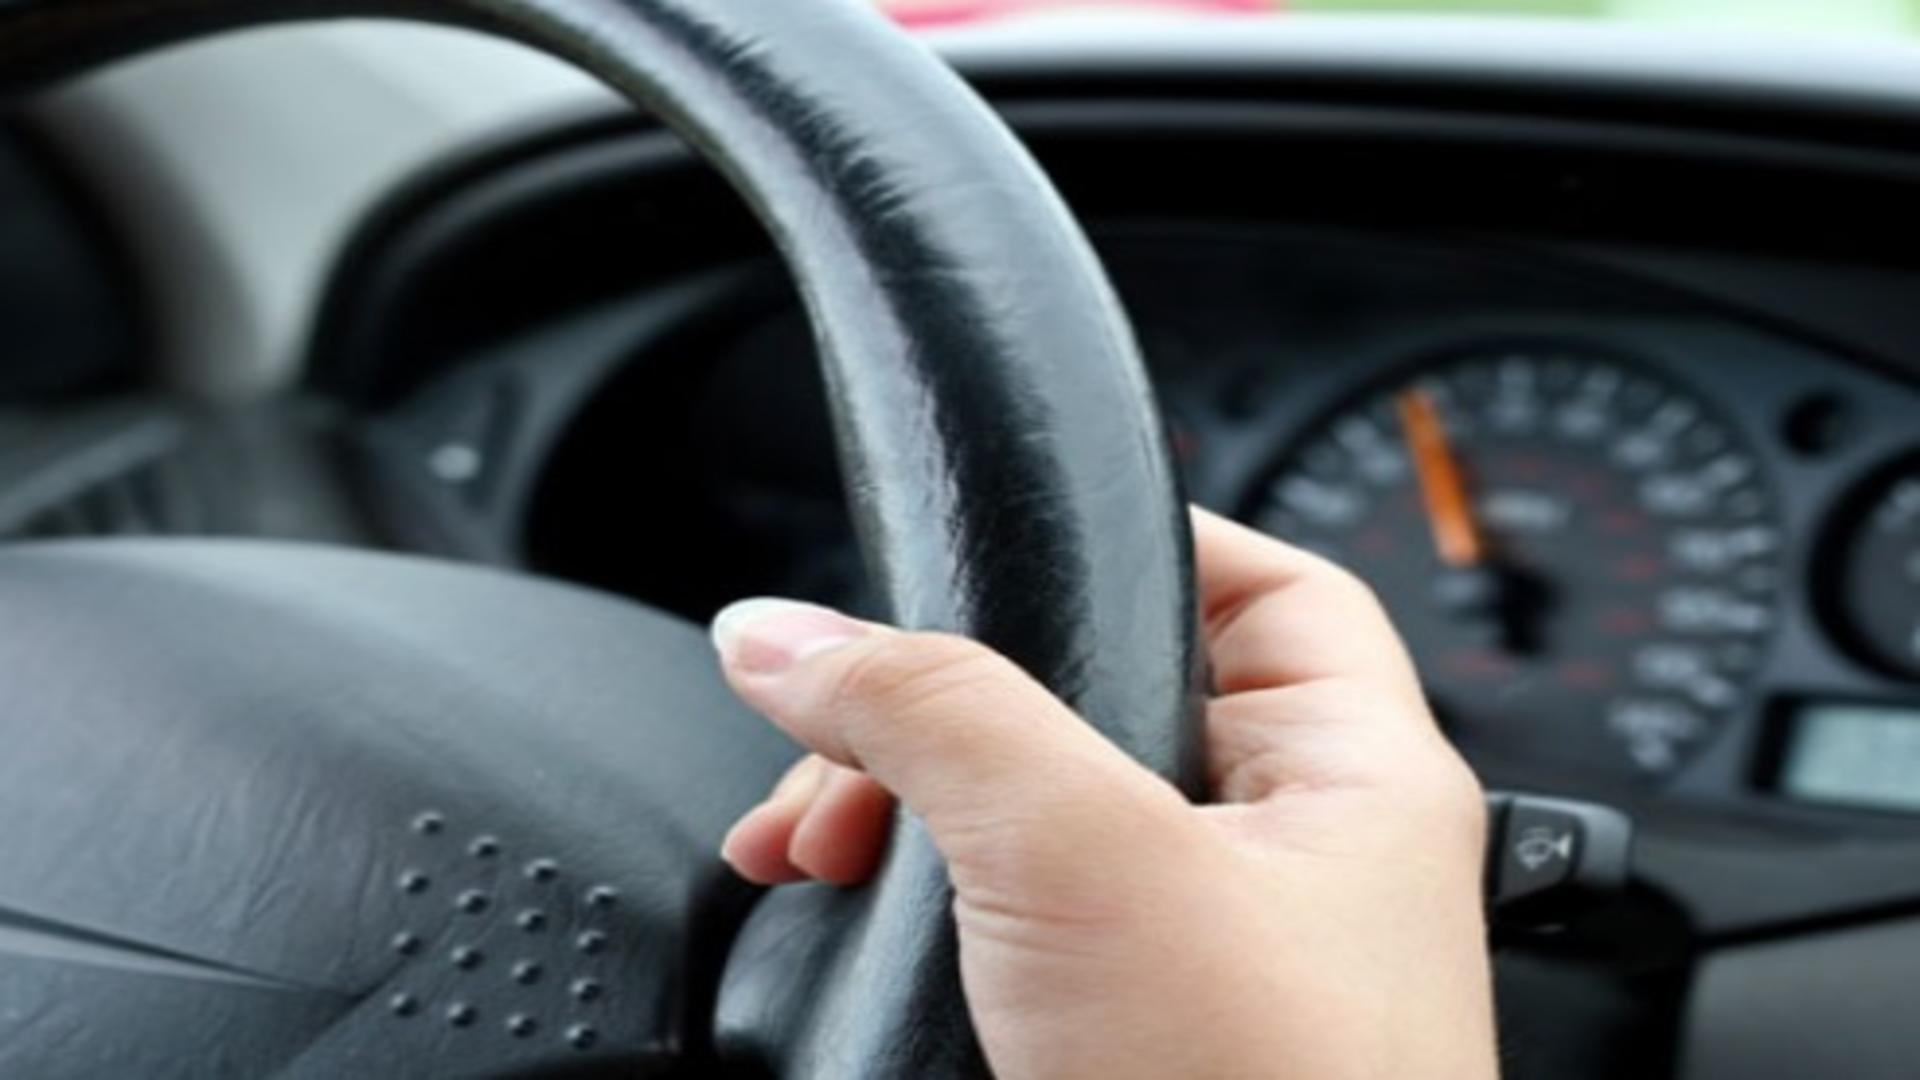 Șoferiță din Botoșani, prinsă la volan cu permis de conducere fals. Femeia s-a ales cu dosar penal